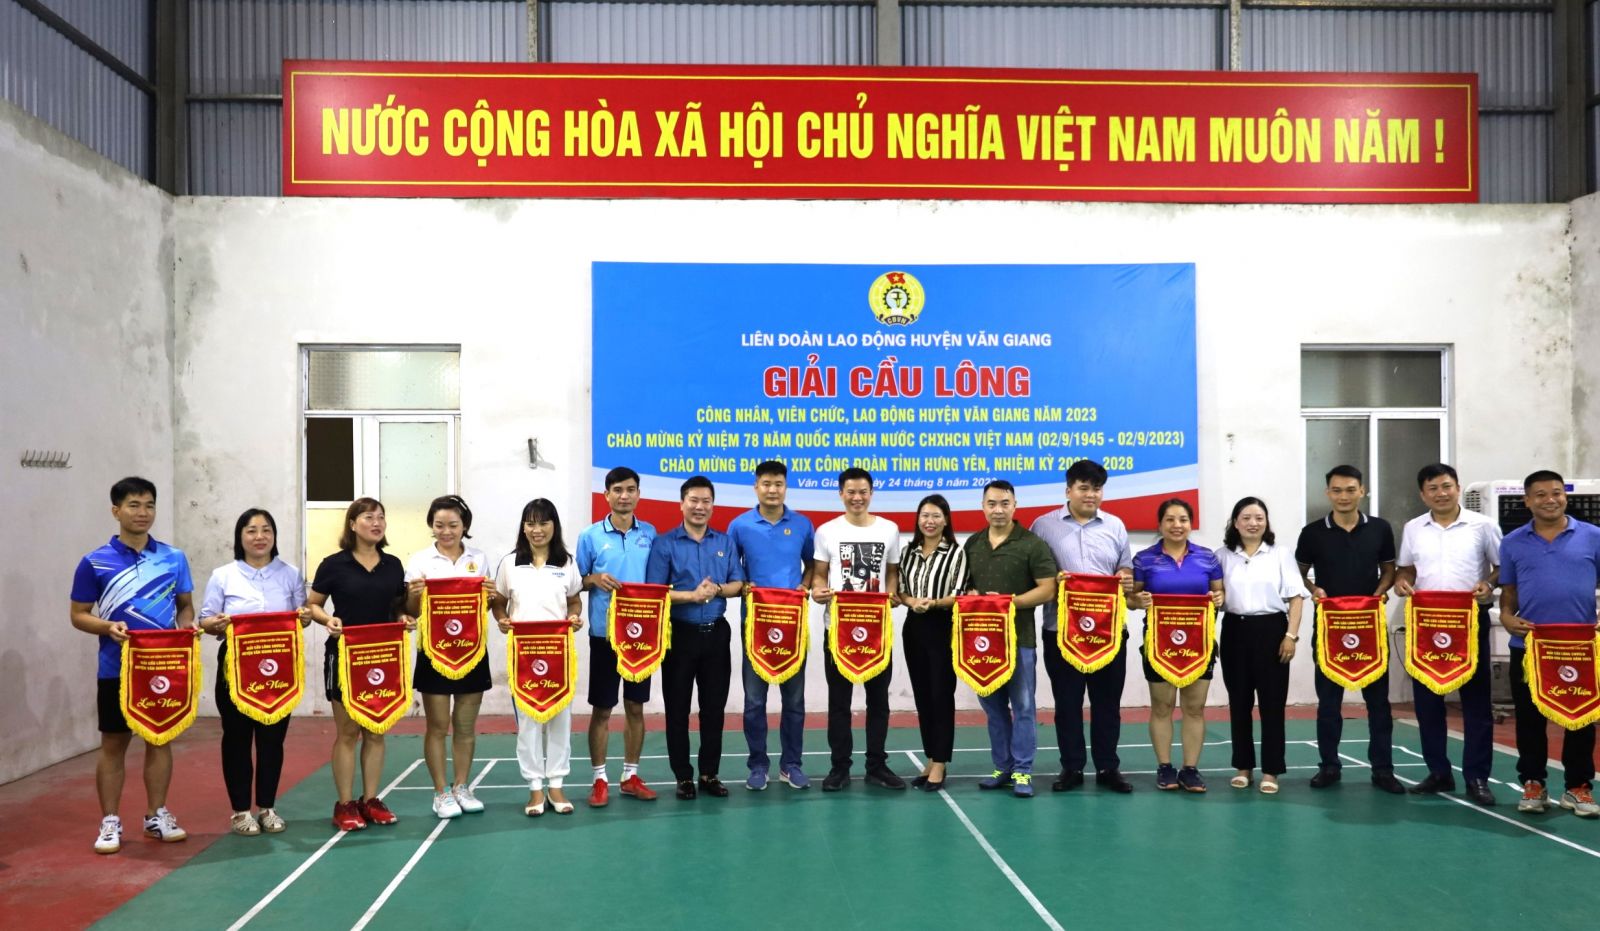 Liên đoàn Lao động huyện Văn Giang tổ chức giải cầu lông  công nhân, viên chức, lao động năm 2023